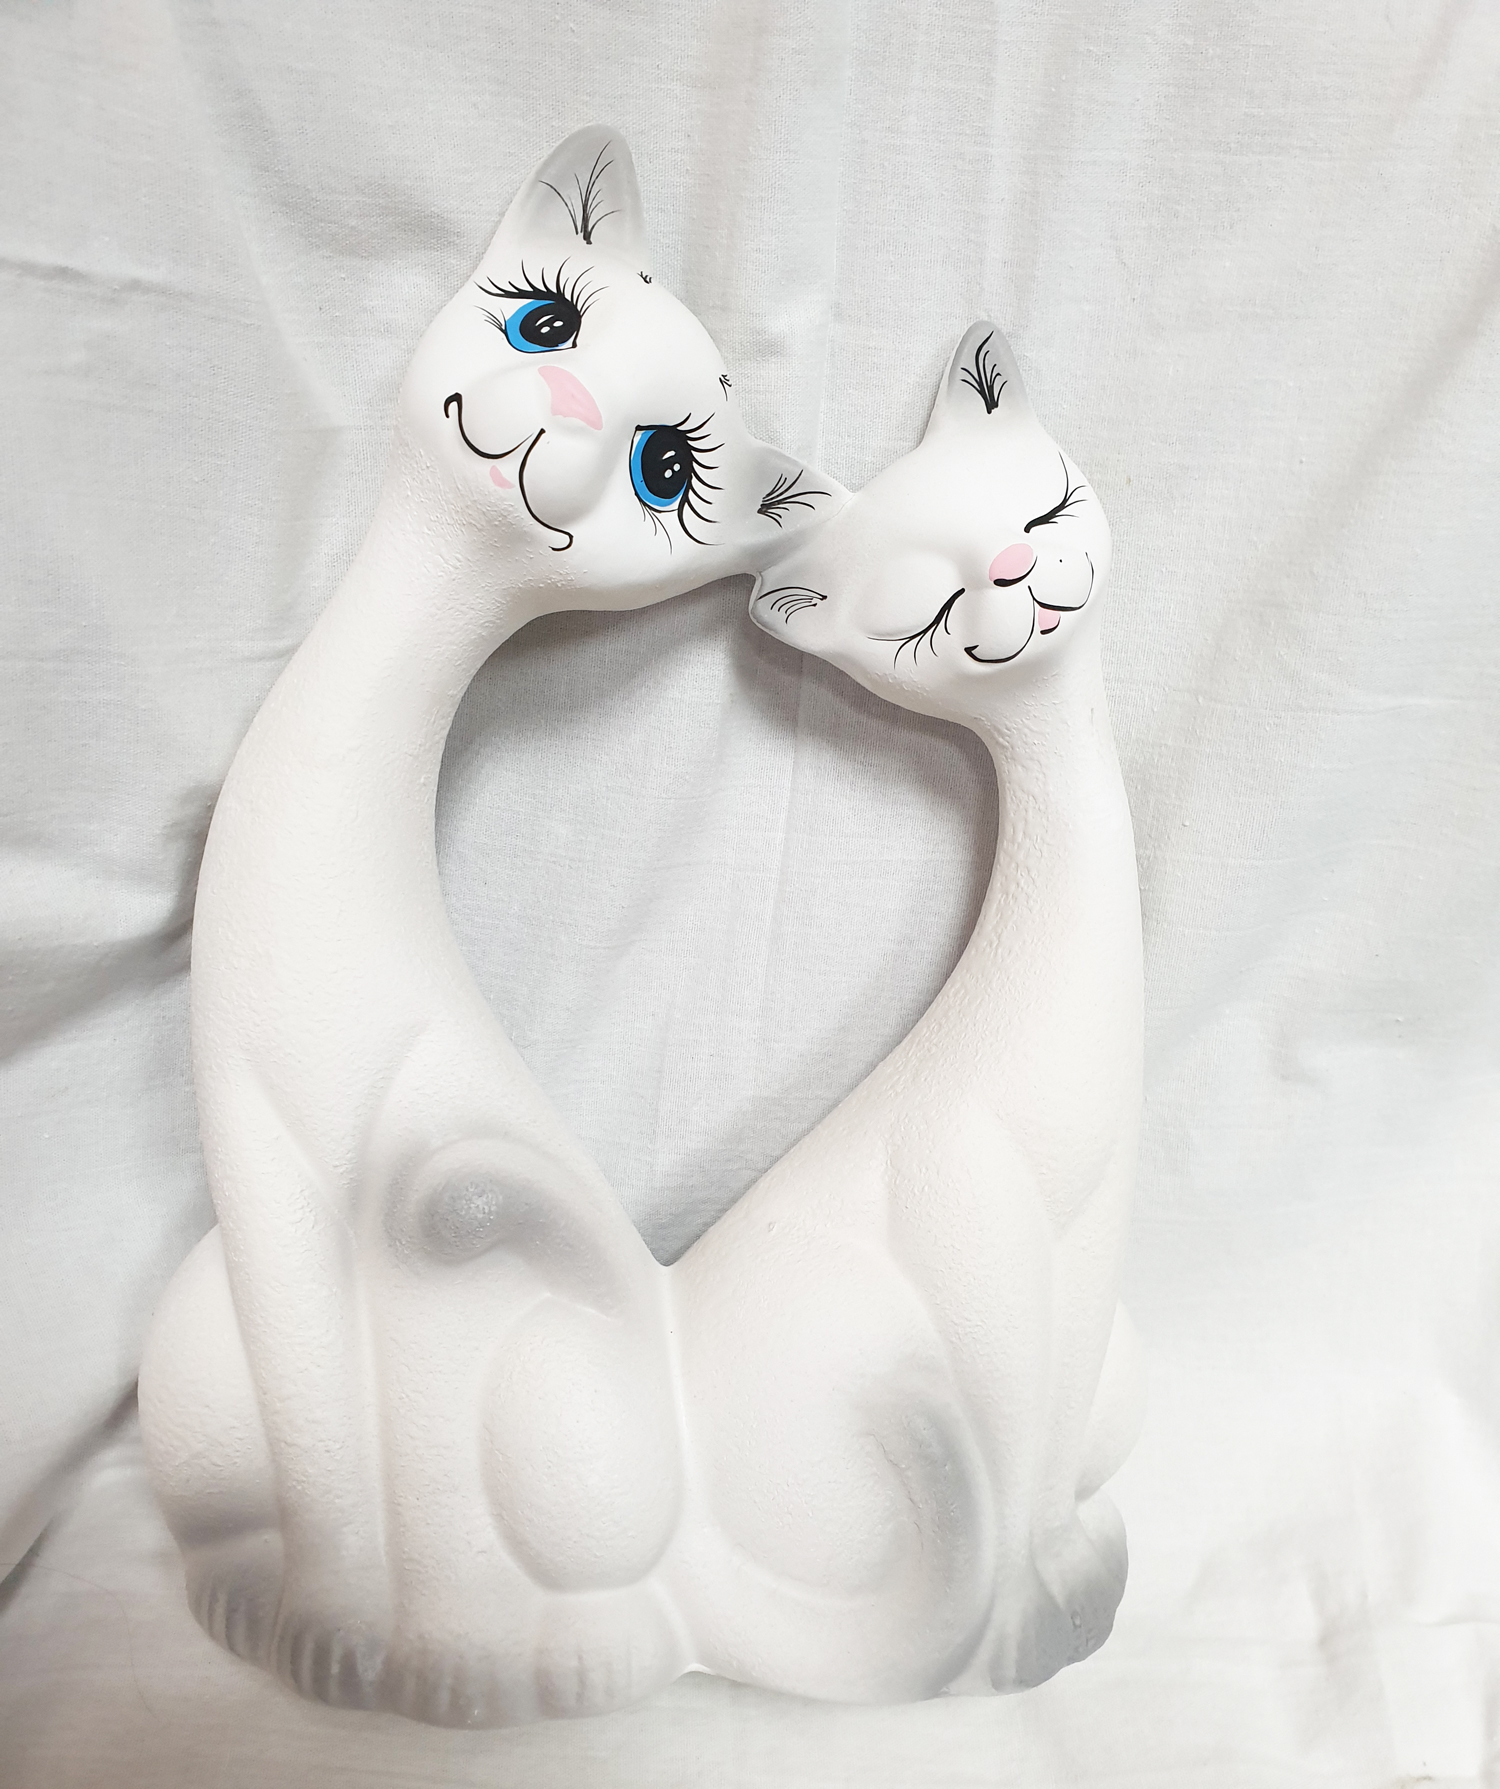 Ceramic cats in love